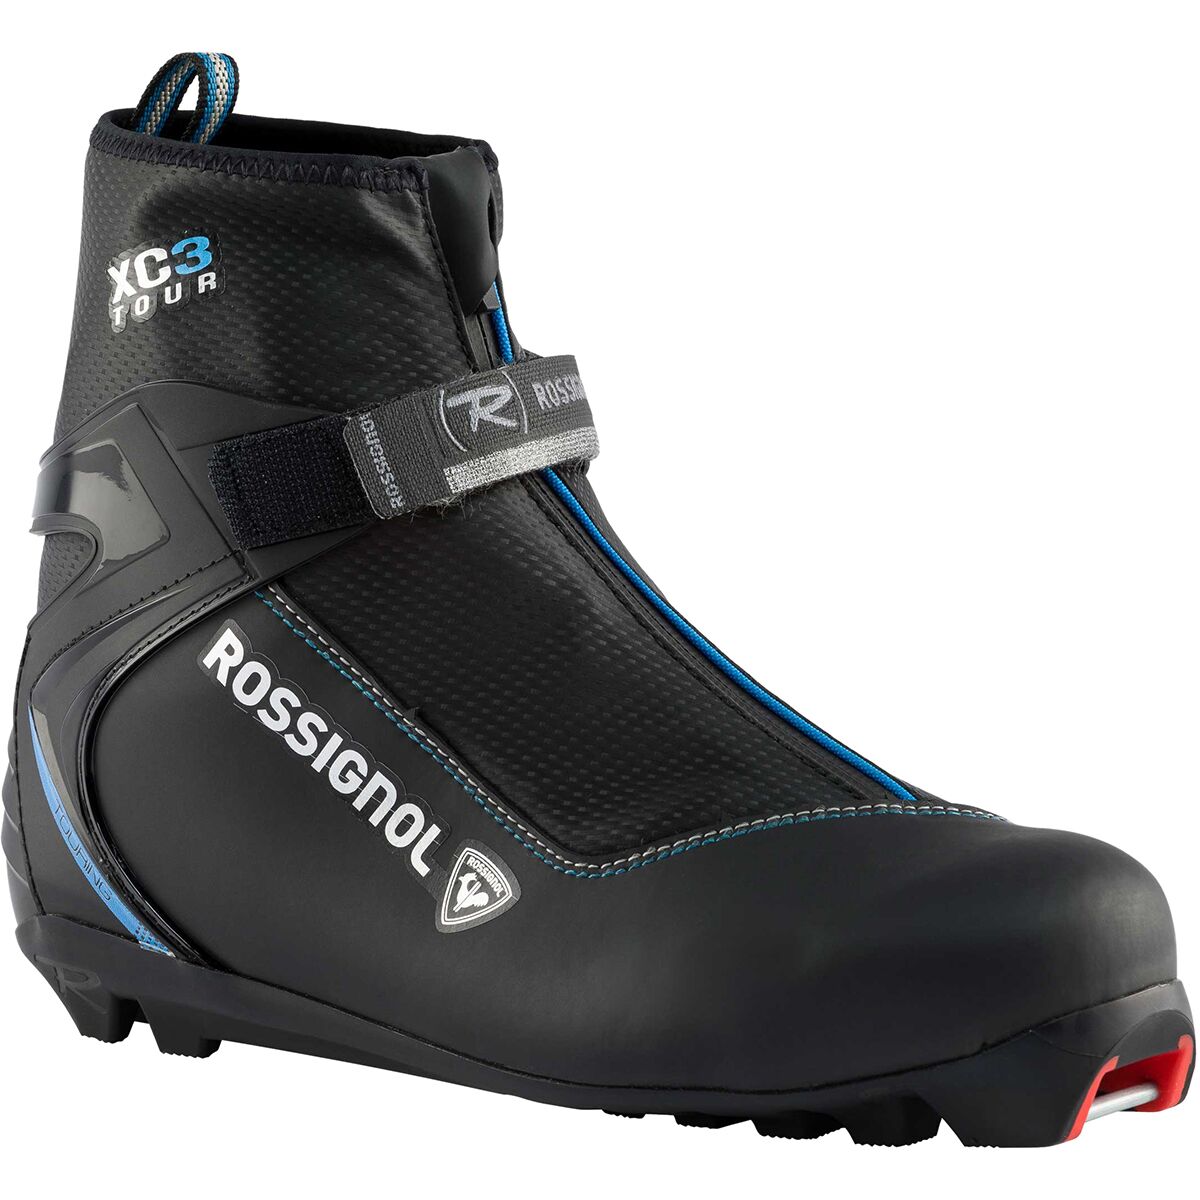 Rossignol XC 3 FW Ski Boot - 2022